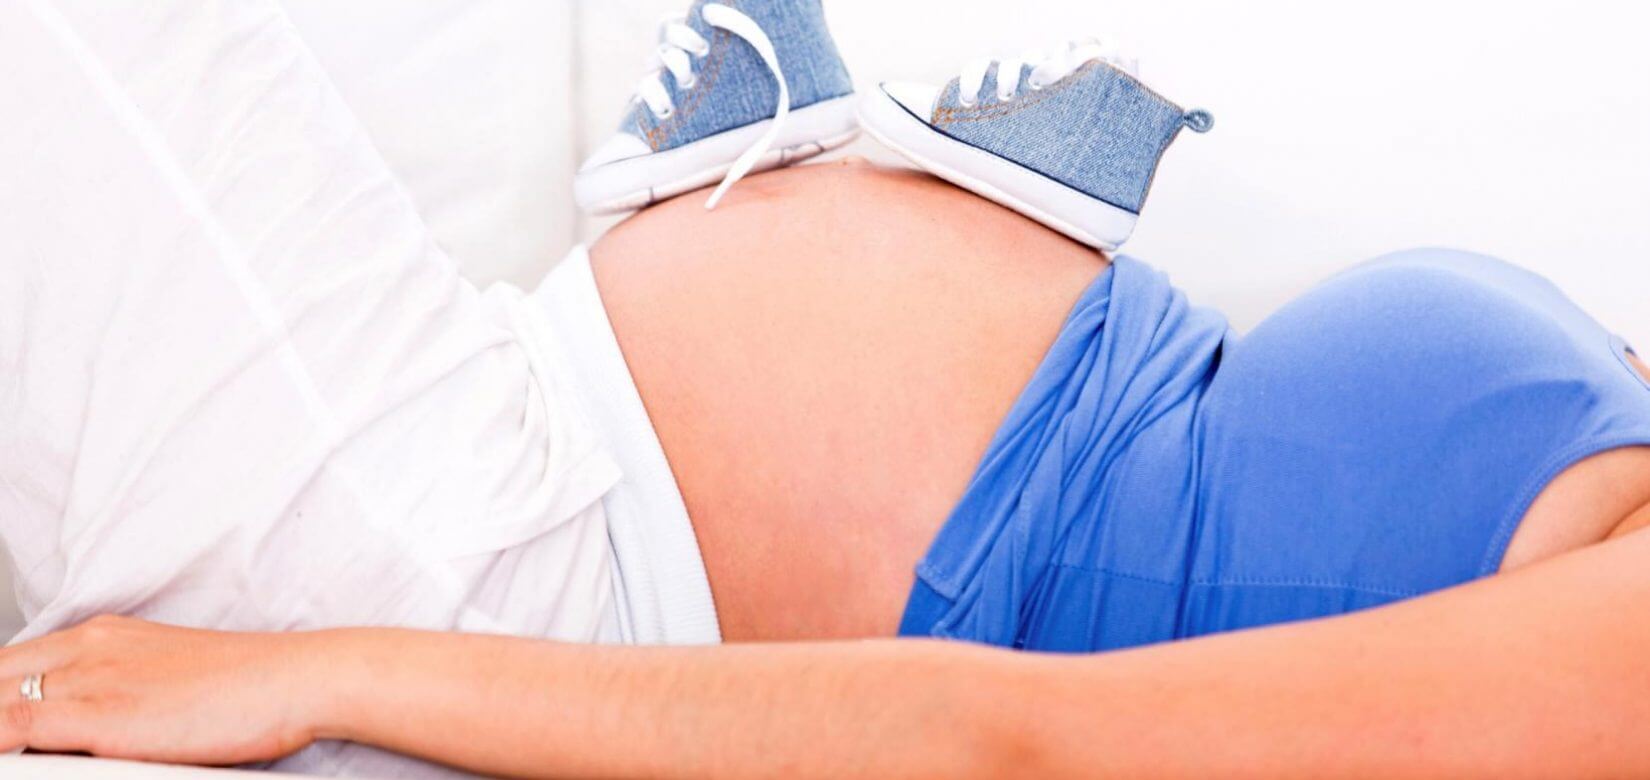 Γιατί οι έγκυες πρέπει να αποφεύγουν τα απολυμαντικά;